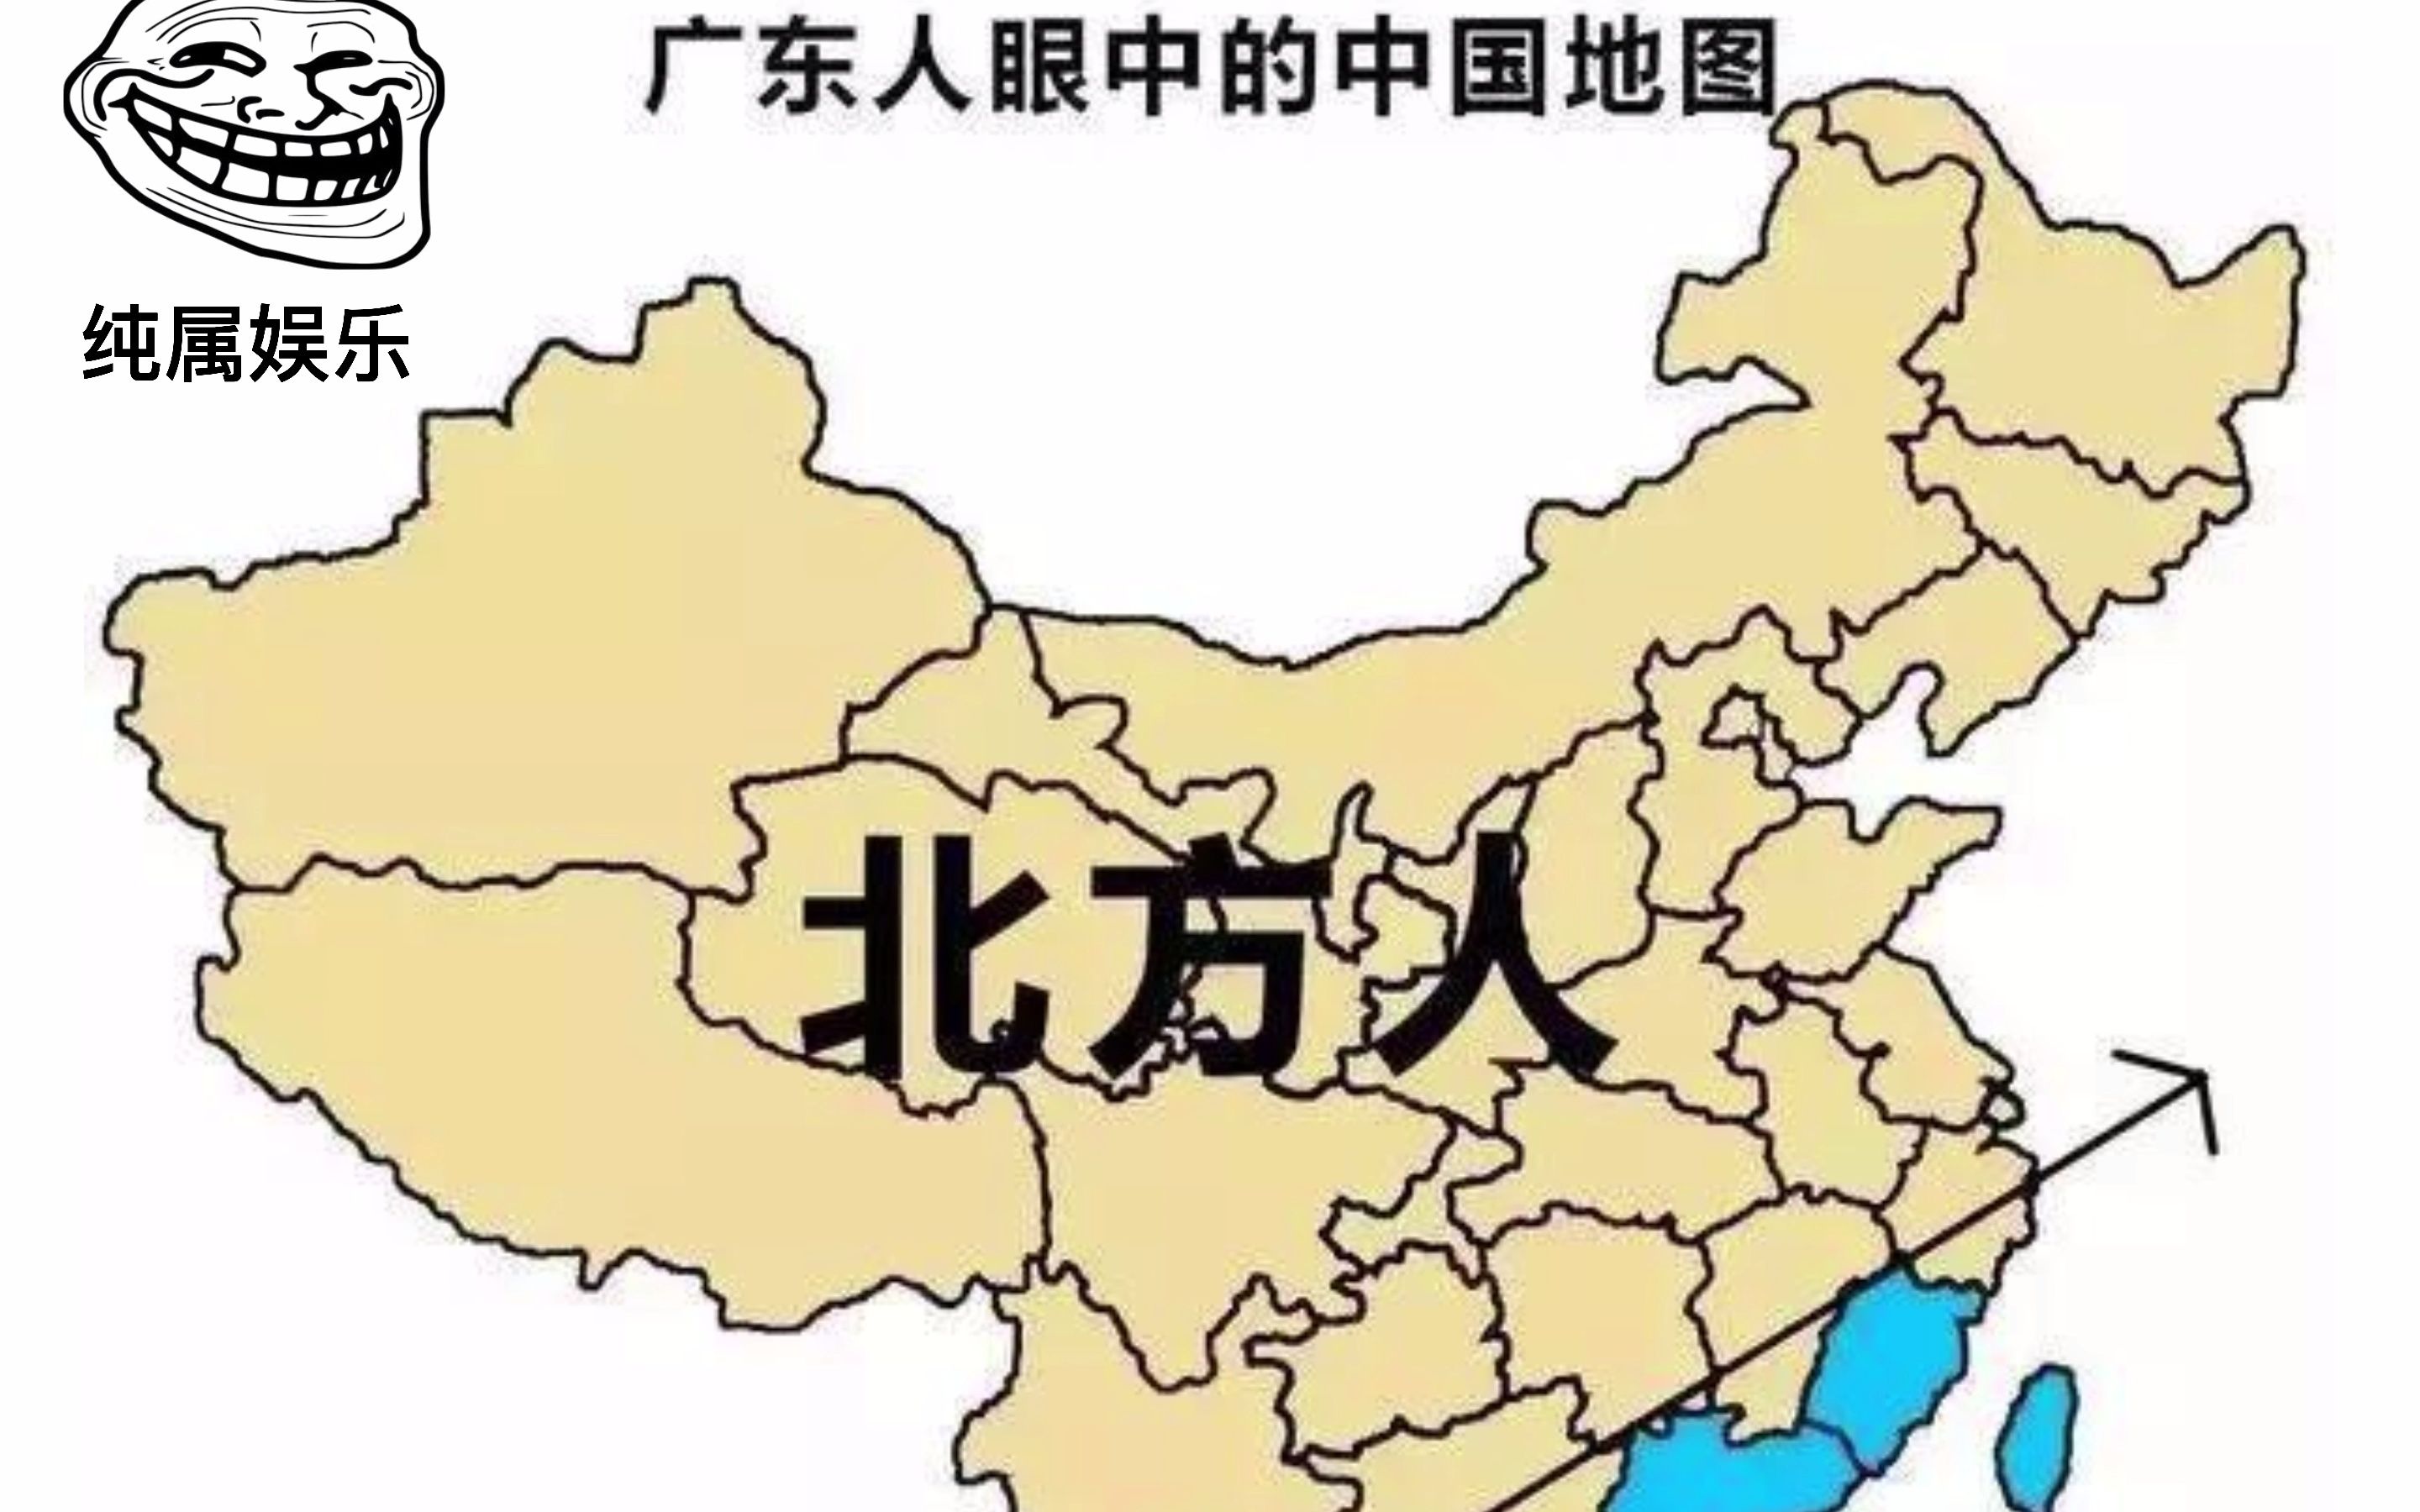 搞笑:中国人眼中的中国地图